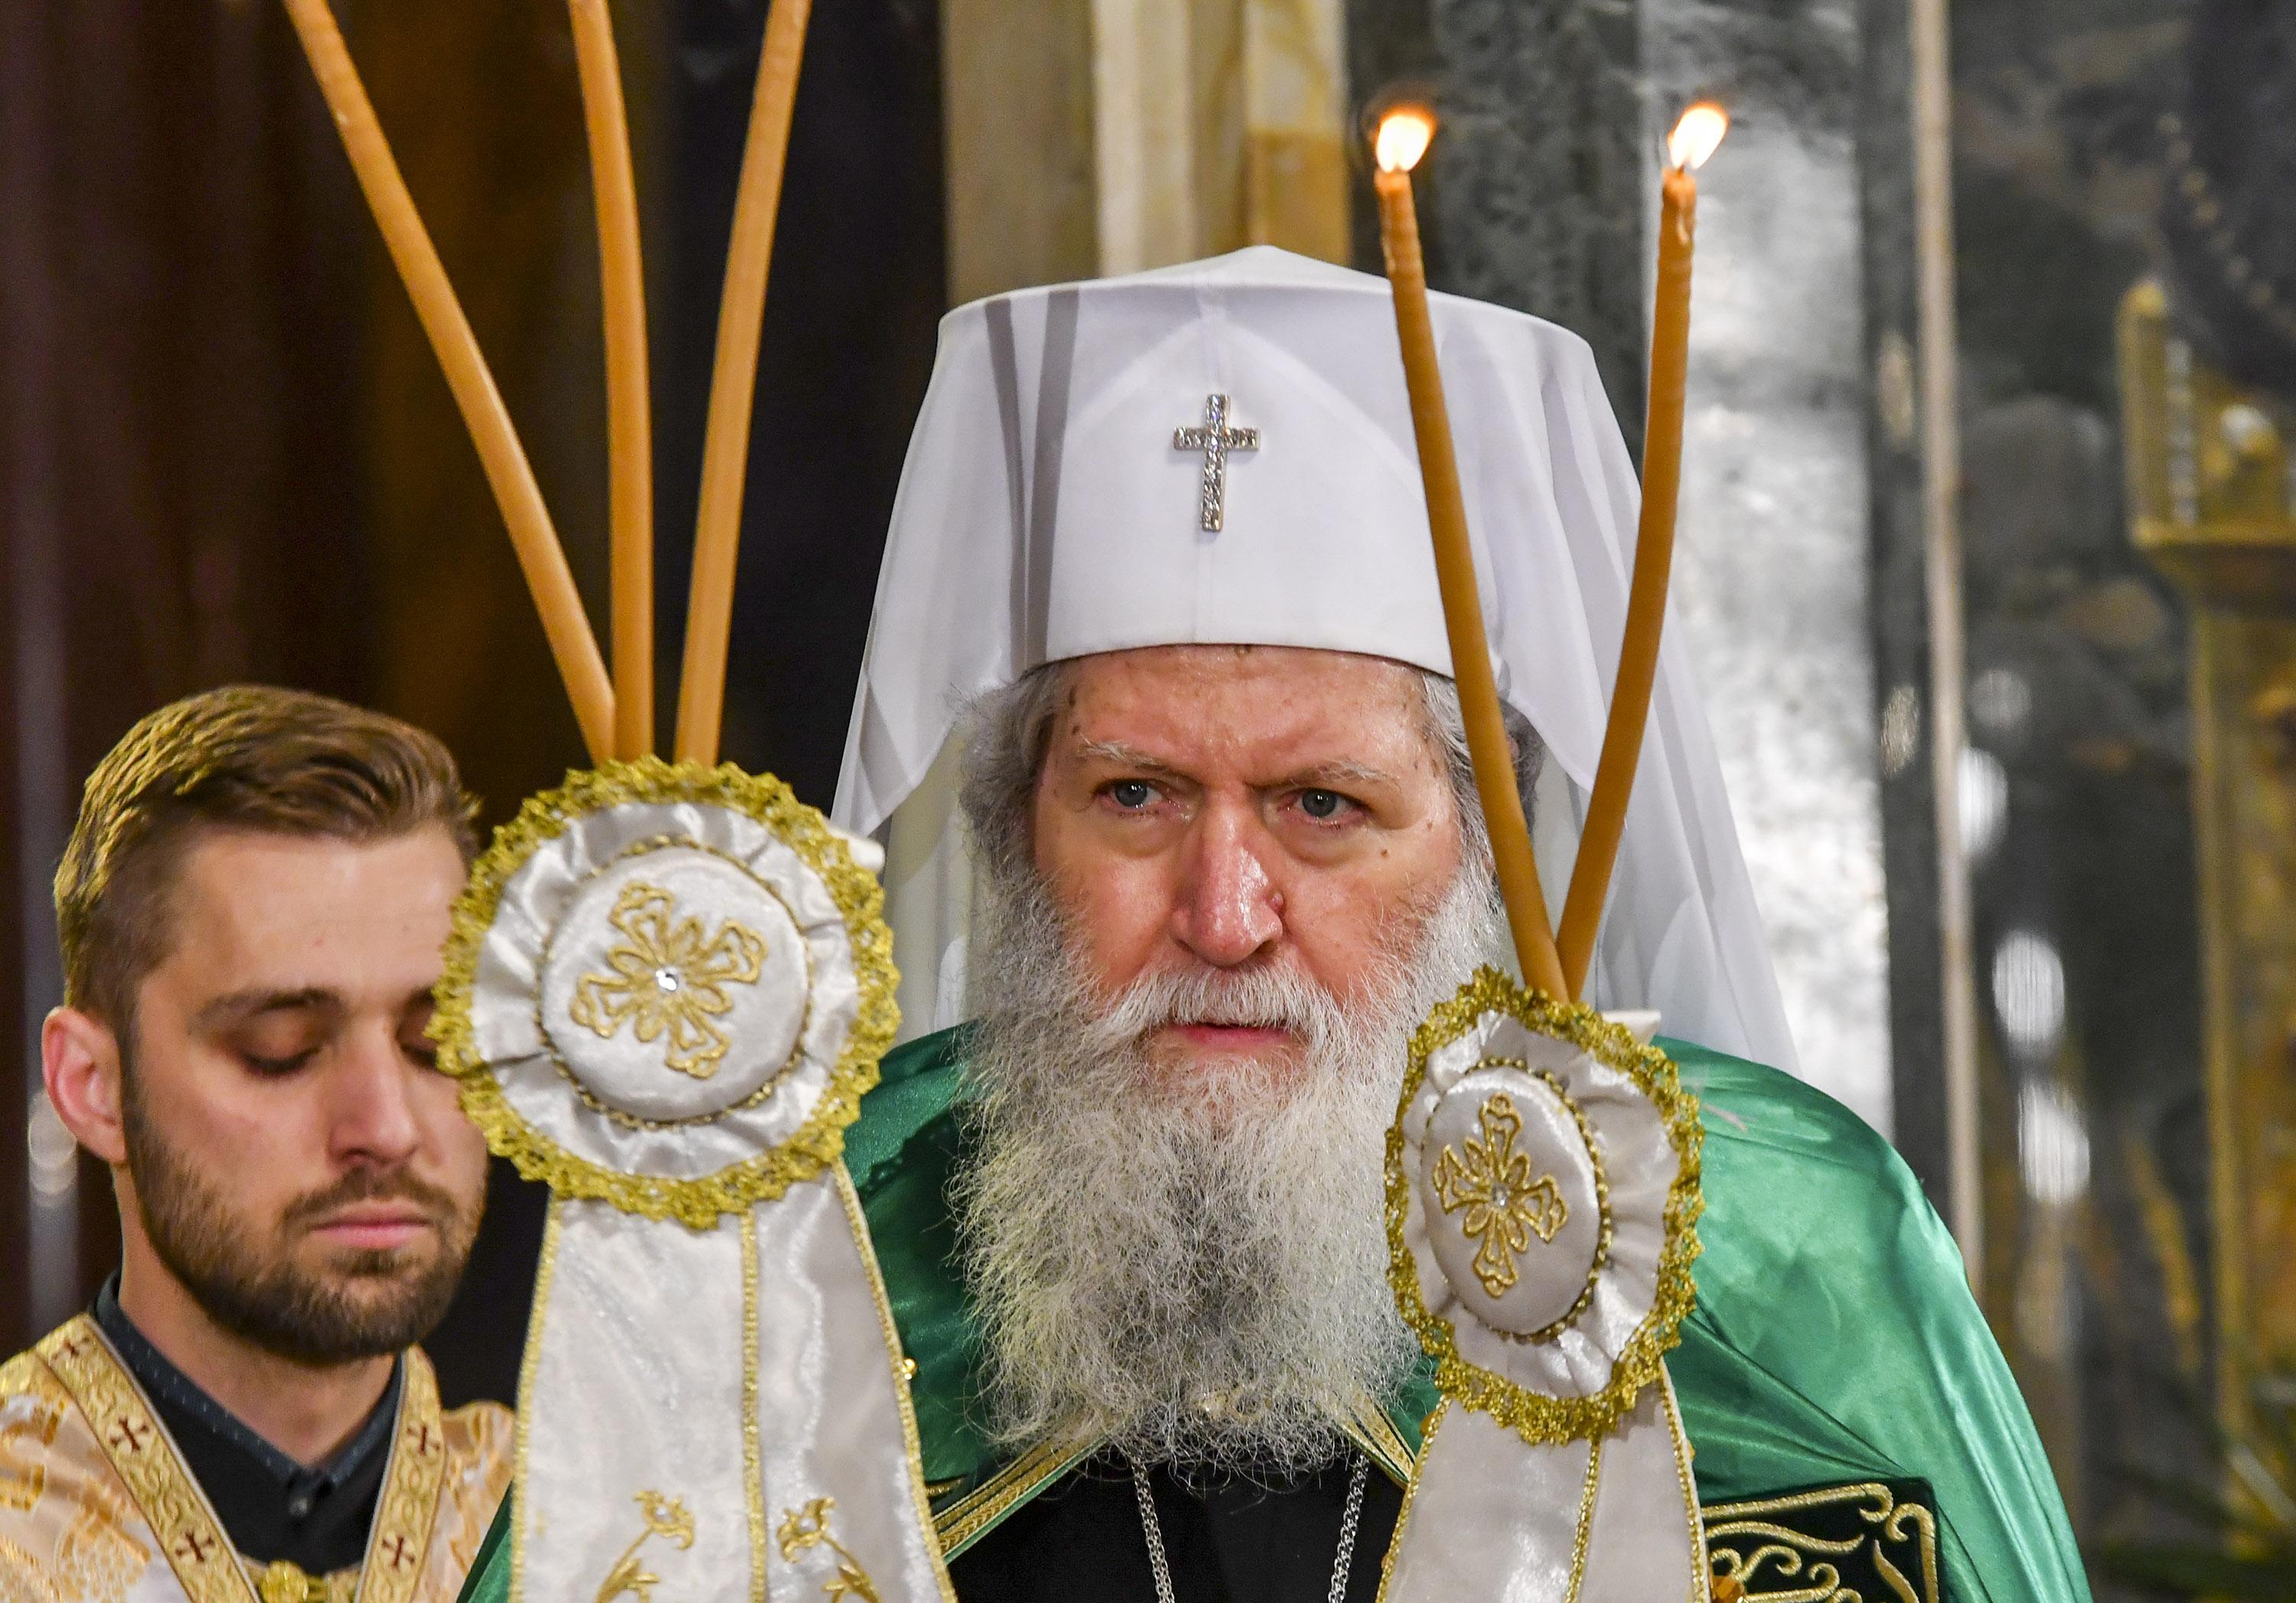 Светия Синод съобщи че Негово Светейшество Българският патриарх и Софийски